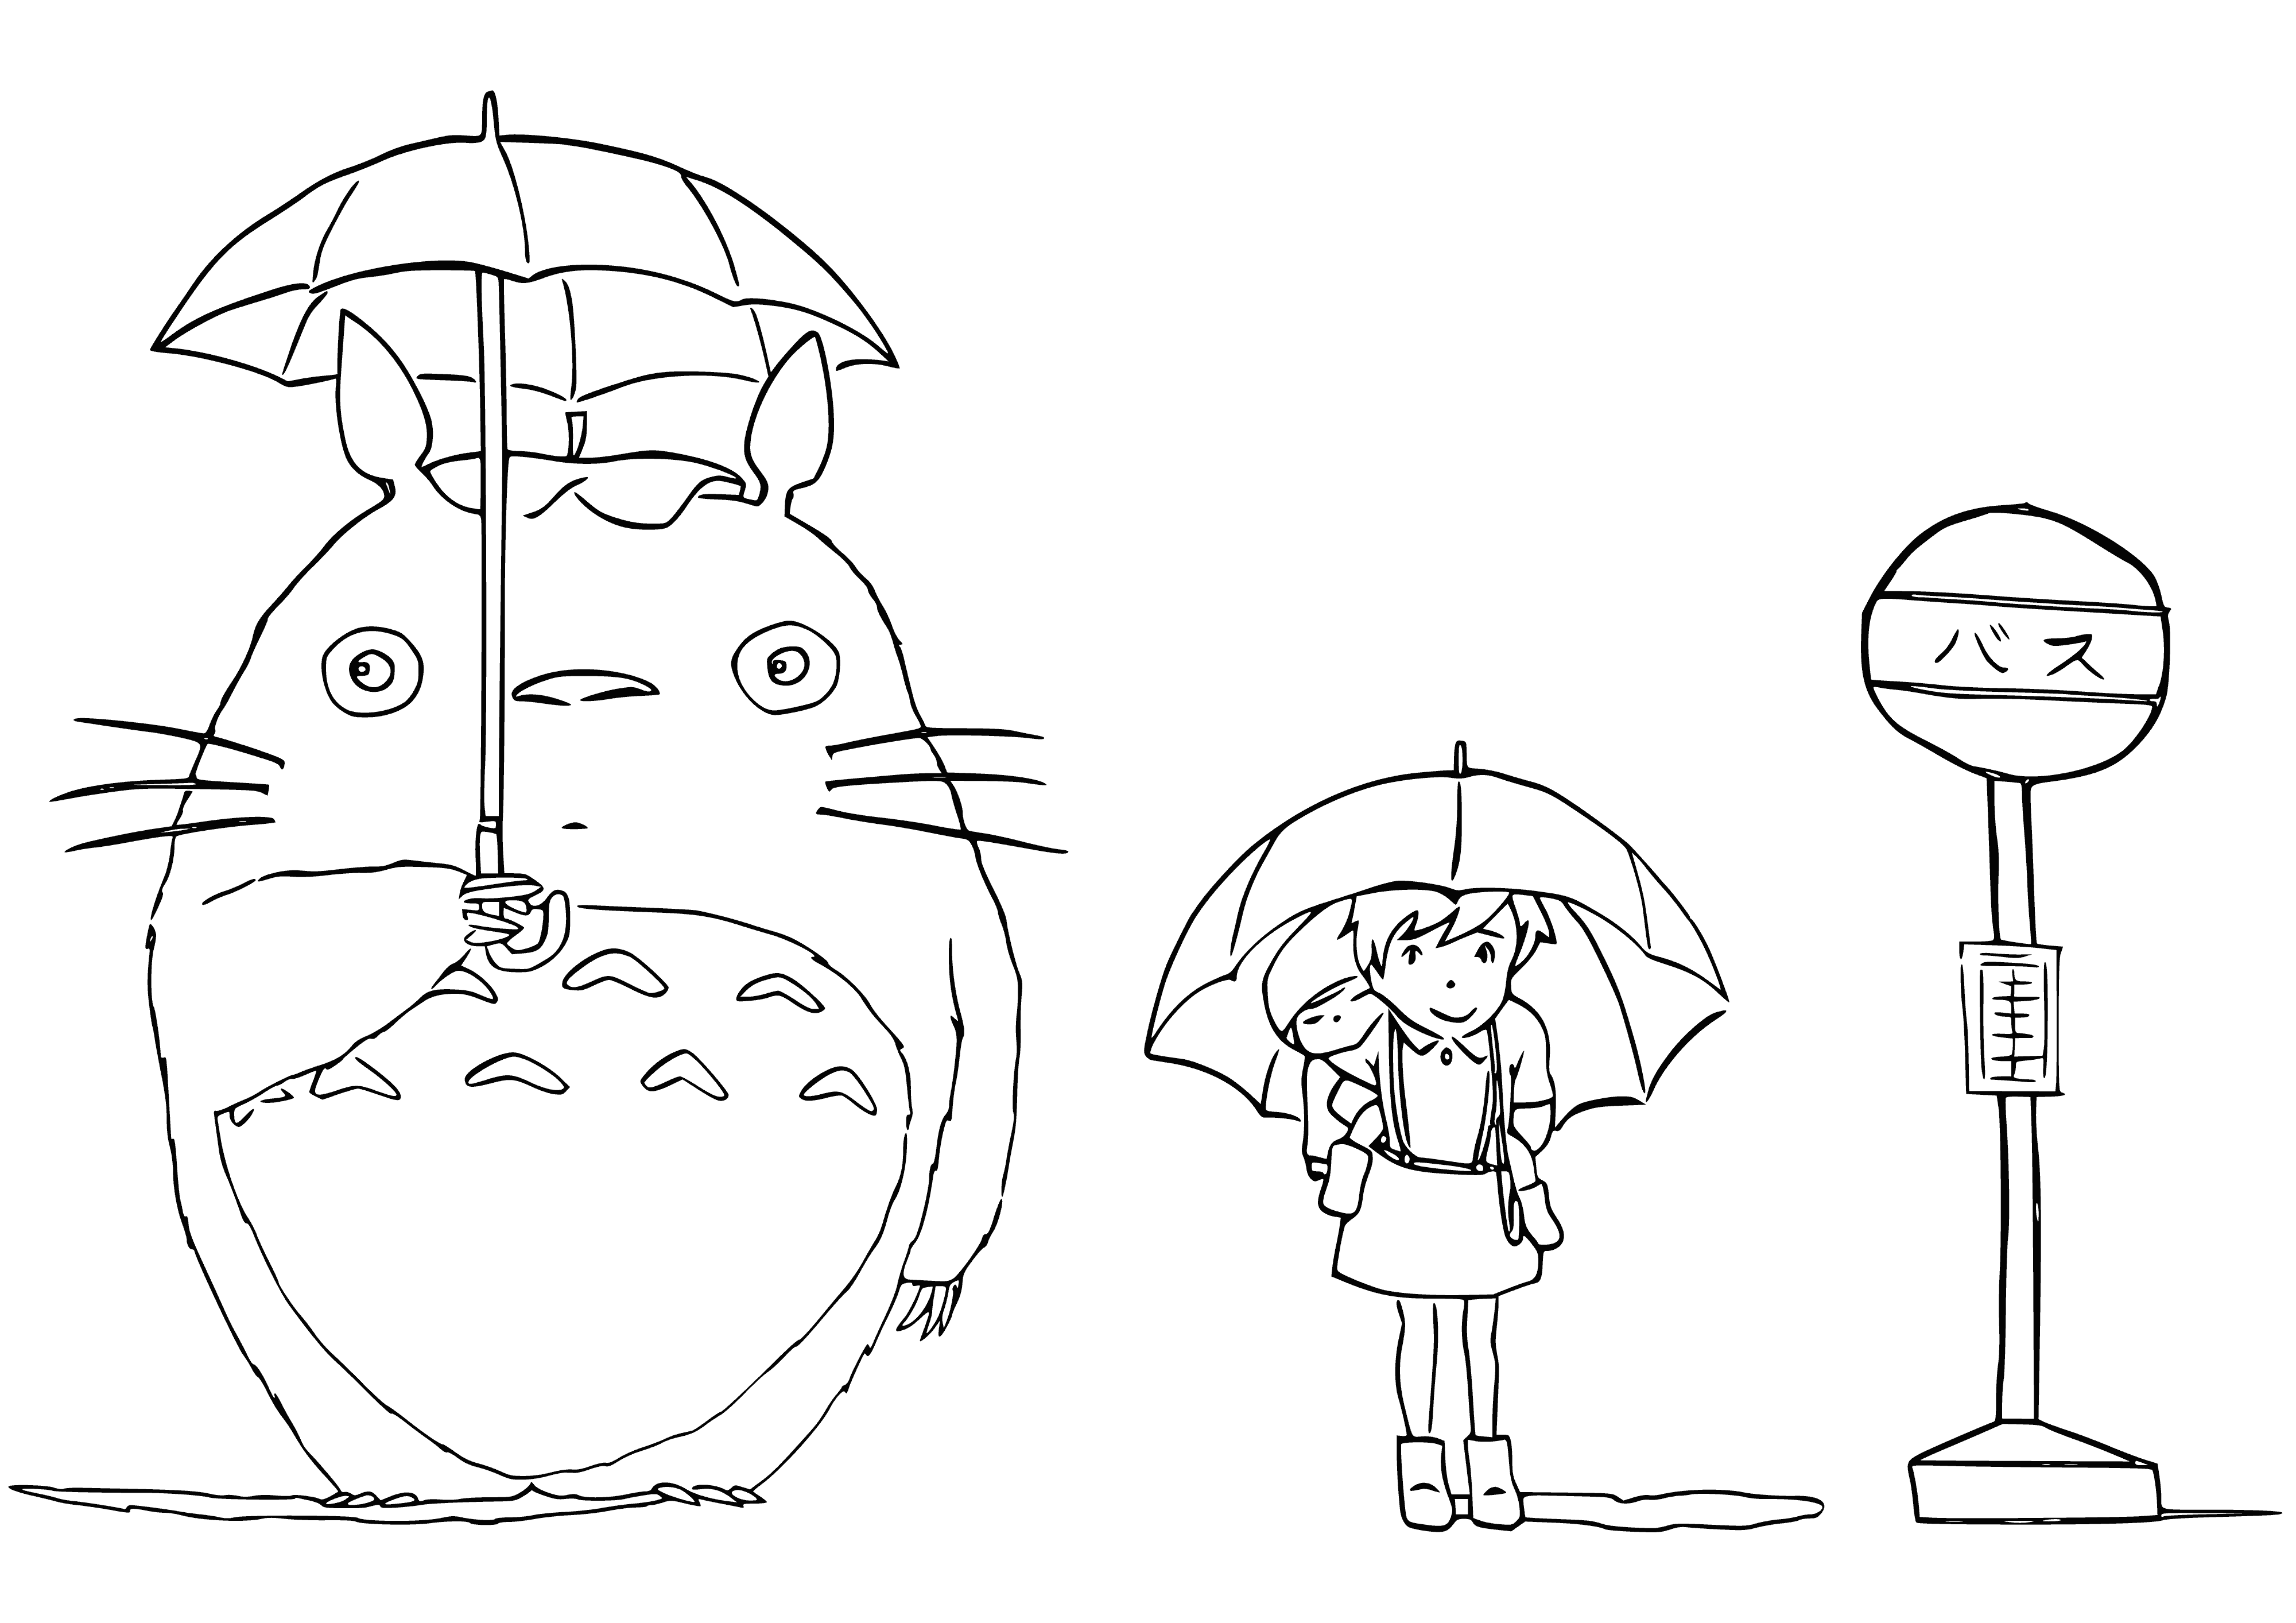 Totoro and Satsuki coloring page